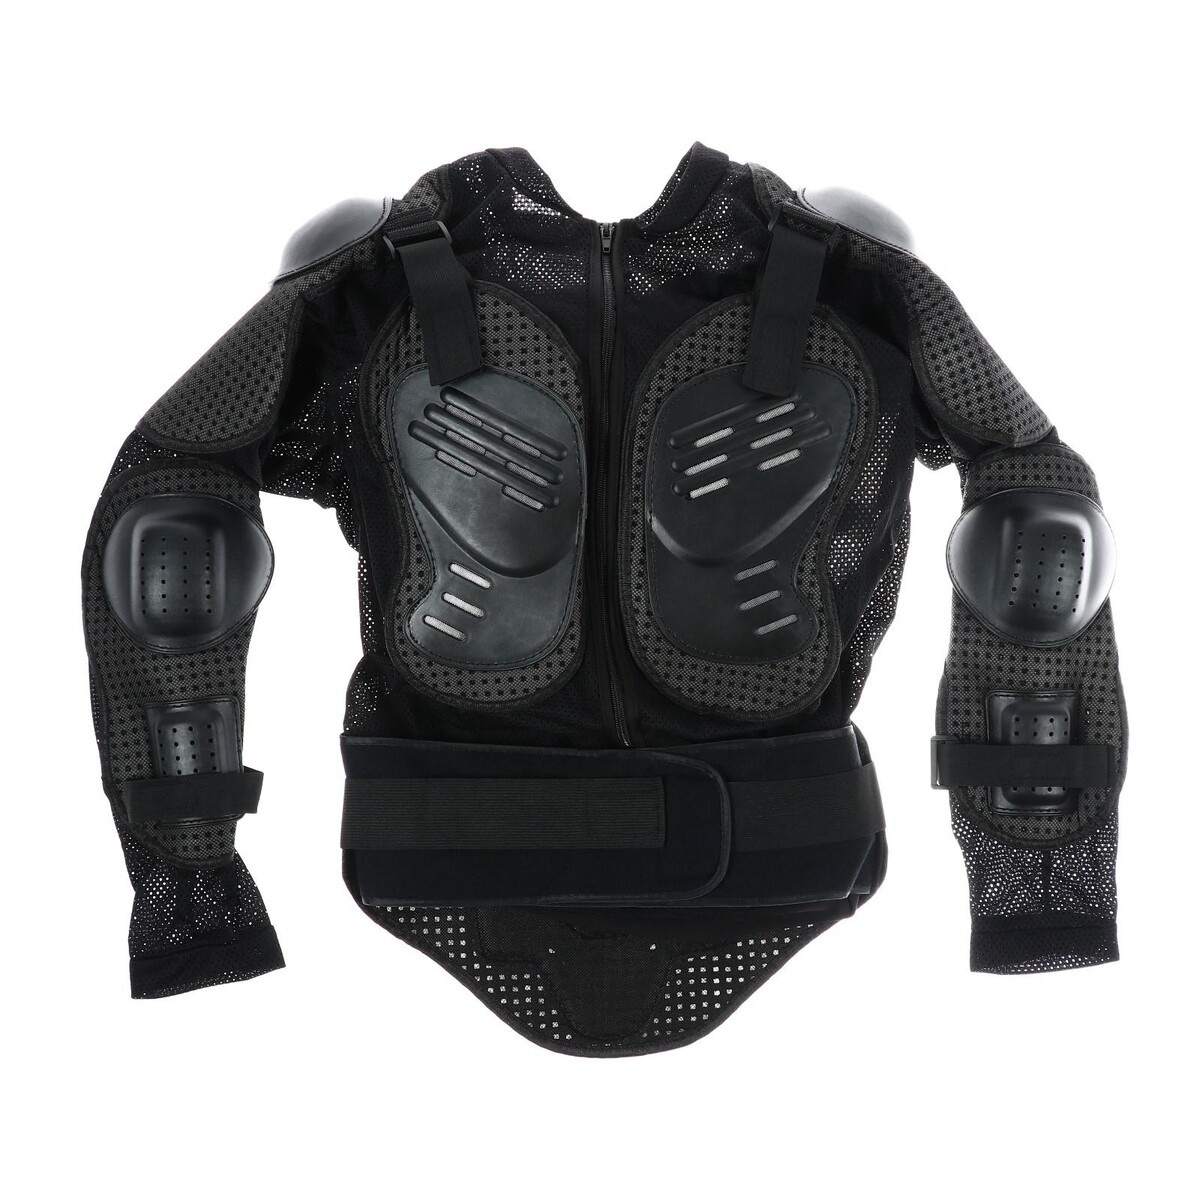 Защита тела, мотоциклетная, мужская, размер 48-50, цвет черный защита паха мужская adidas adistar pro groin guard черно золотая